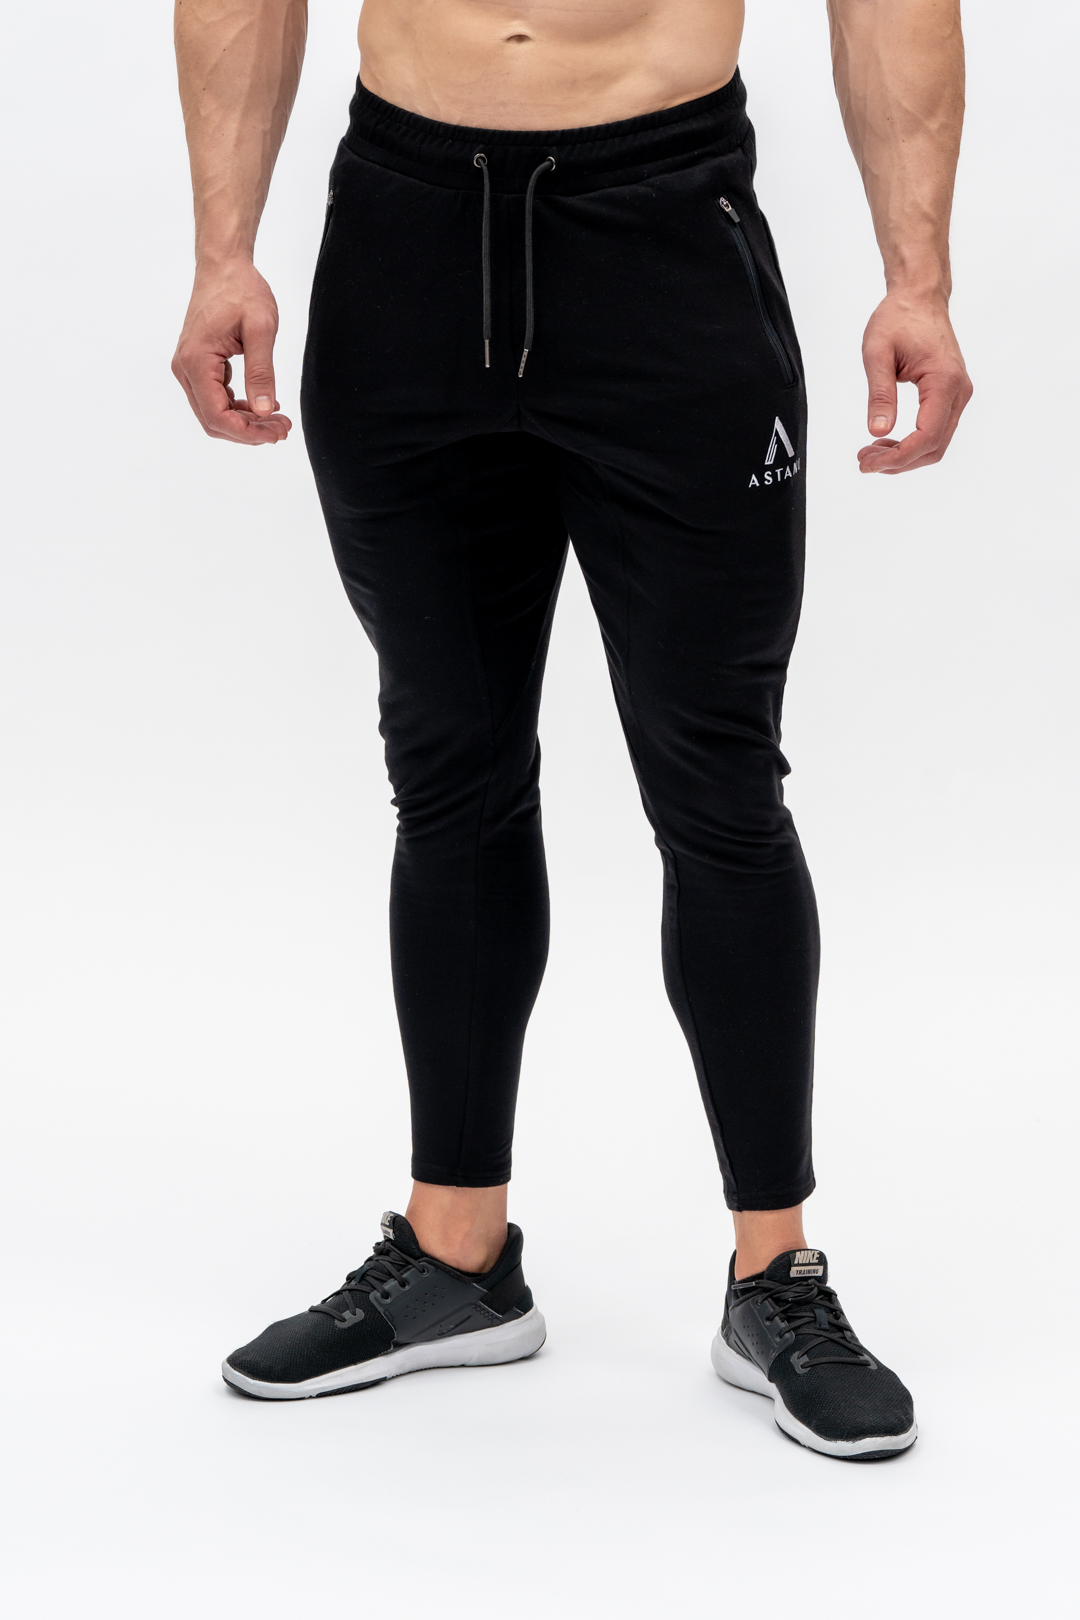 Balenciaga , GW Gym Wear Sweat Pants in Black BNWT M | eBay